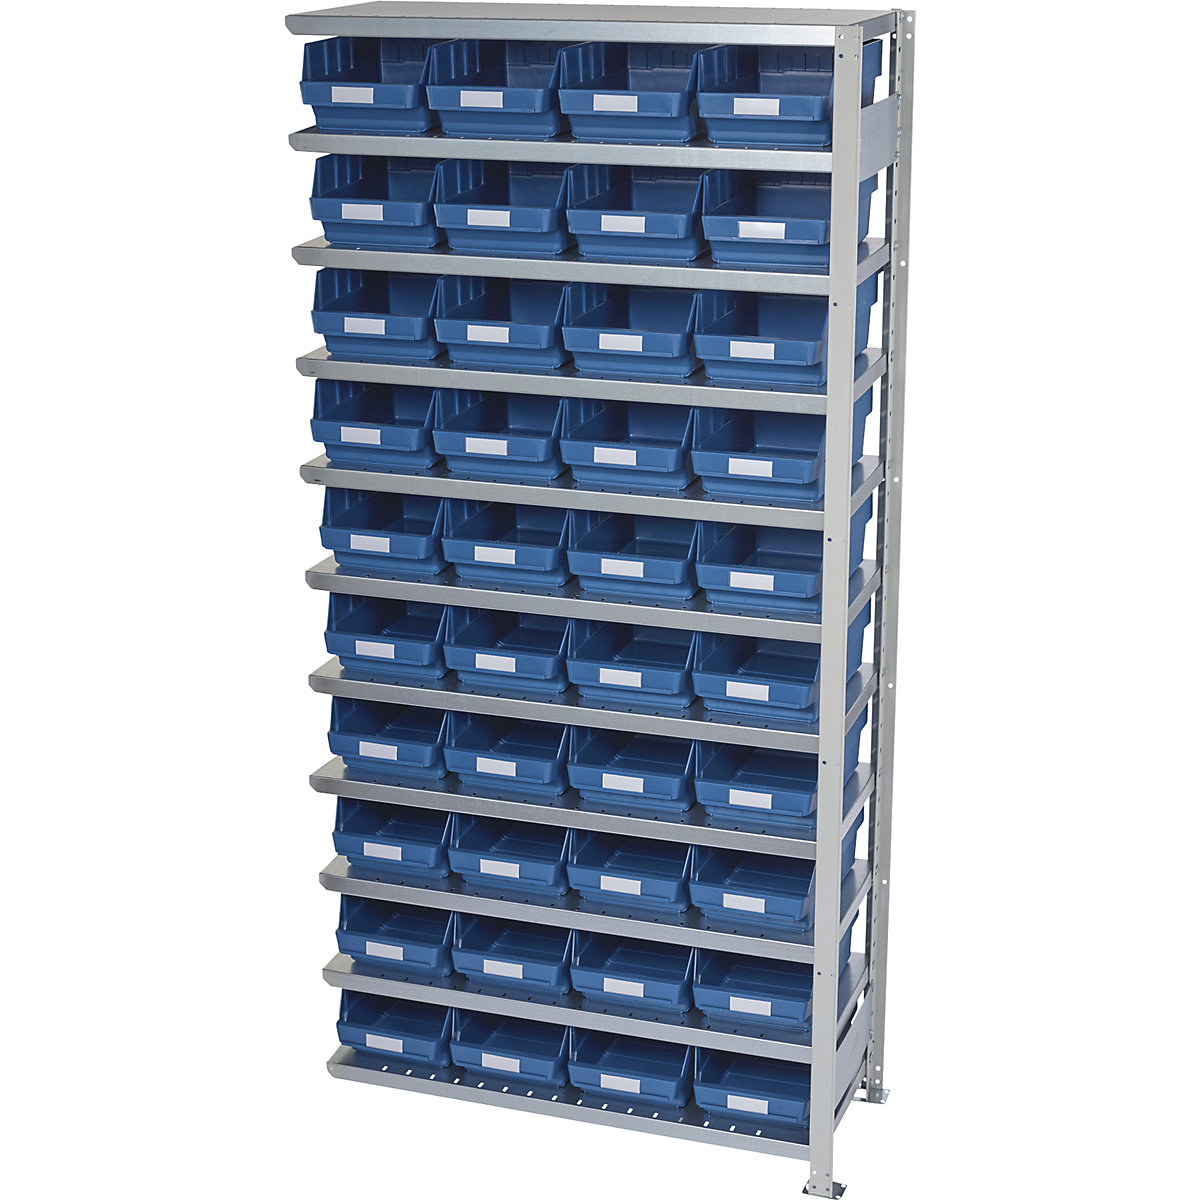 Összedugaszolós állvány dobozokkal – STEMO, állványmagasság 2100 mm, bővítő állvány, 400 mm mély, 40 kék doboz-22